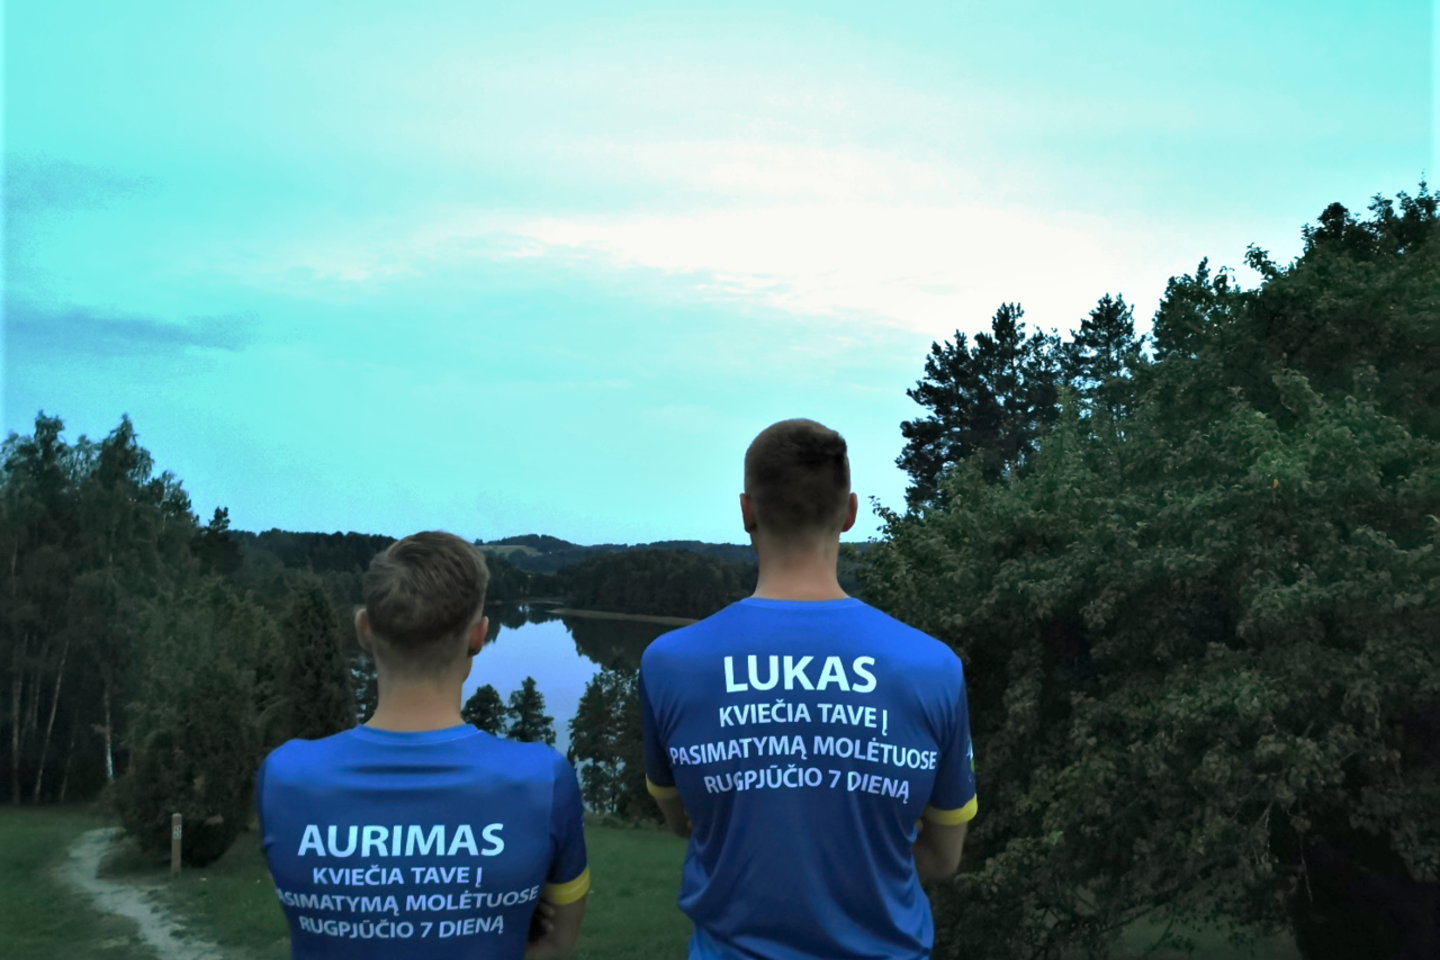  Lukas Gurklis ir Aurimas Masevičius ryžosi įspūdingai kelionei po gimtąją aukštaitiją.<br> Asmeninio albumo nuotr.